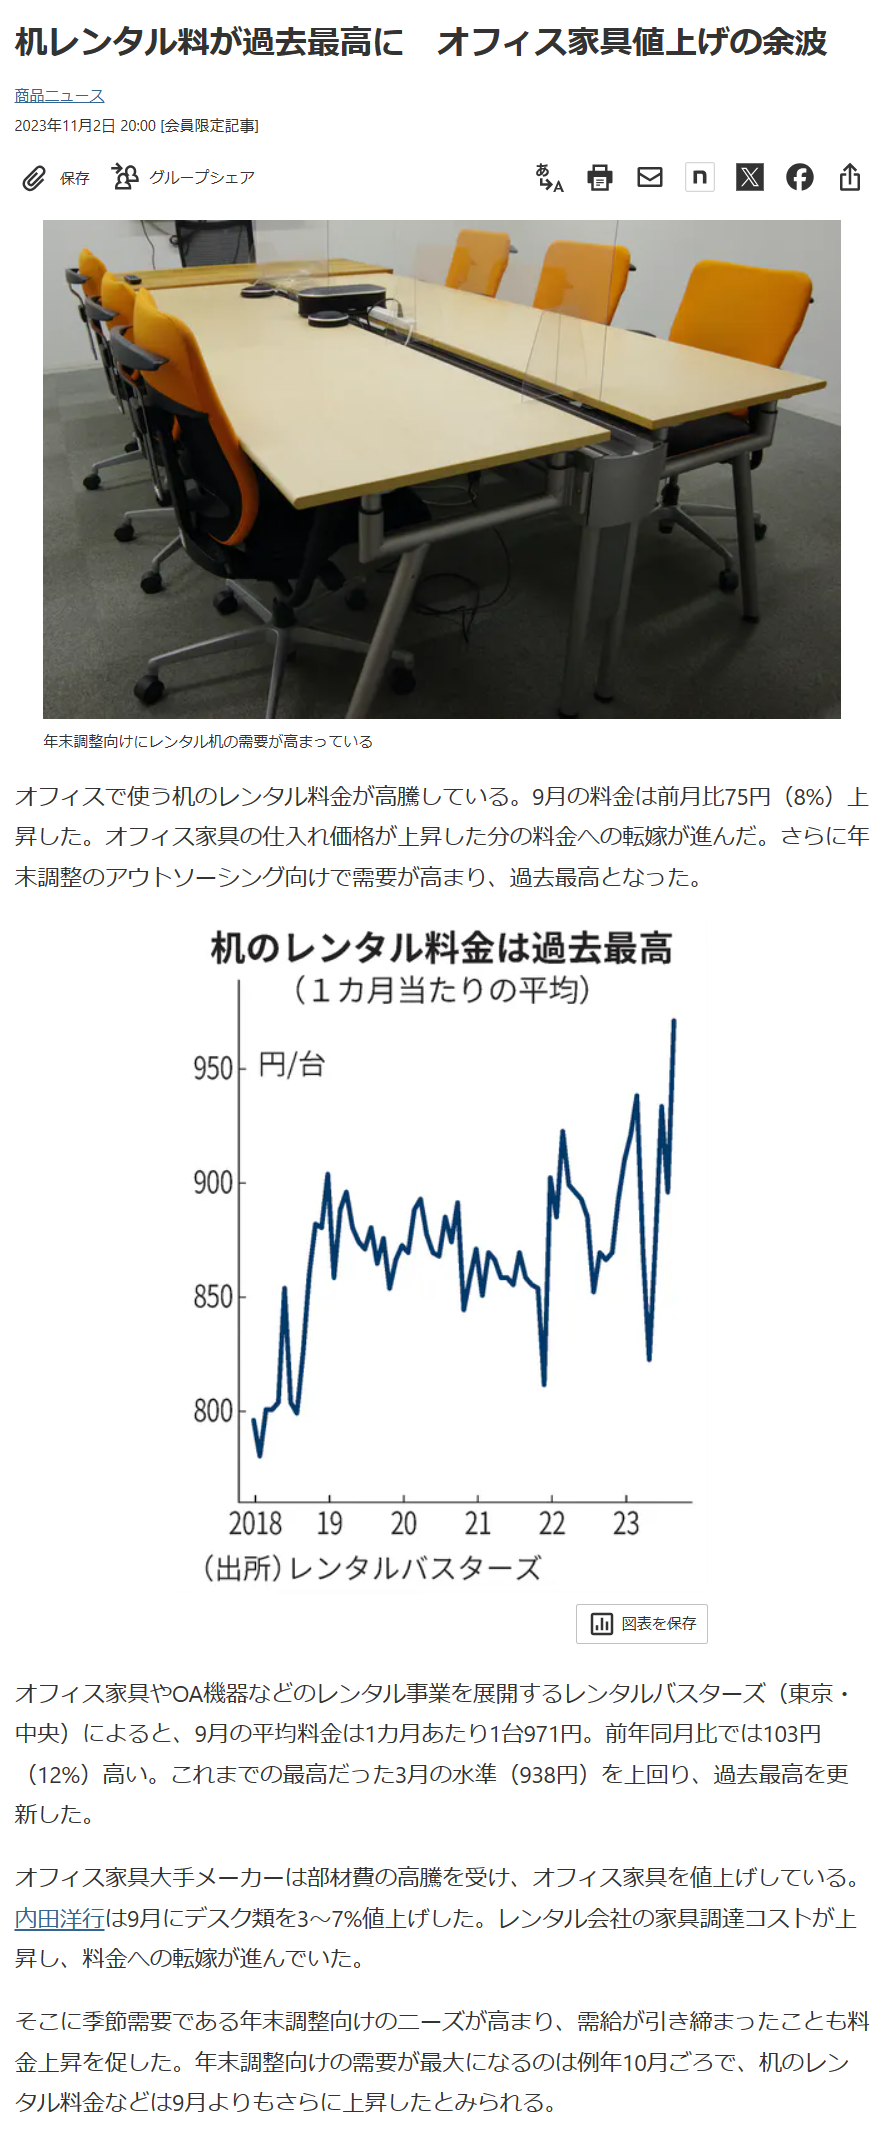 「日本経済新聞」にレンタル机の記事が掲載されました。